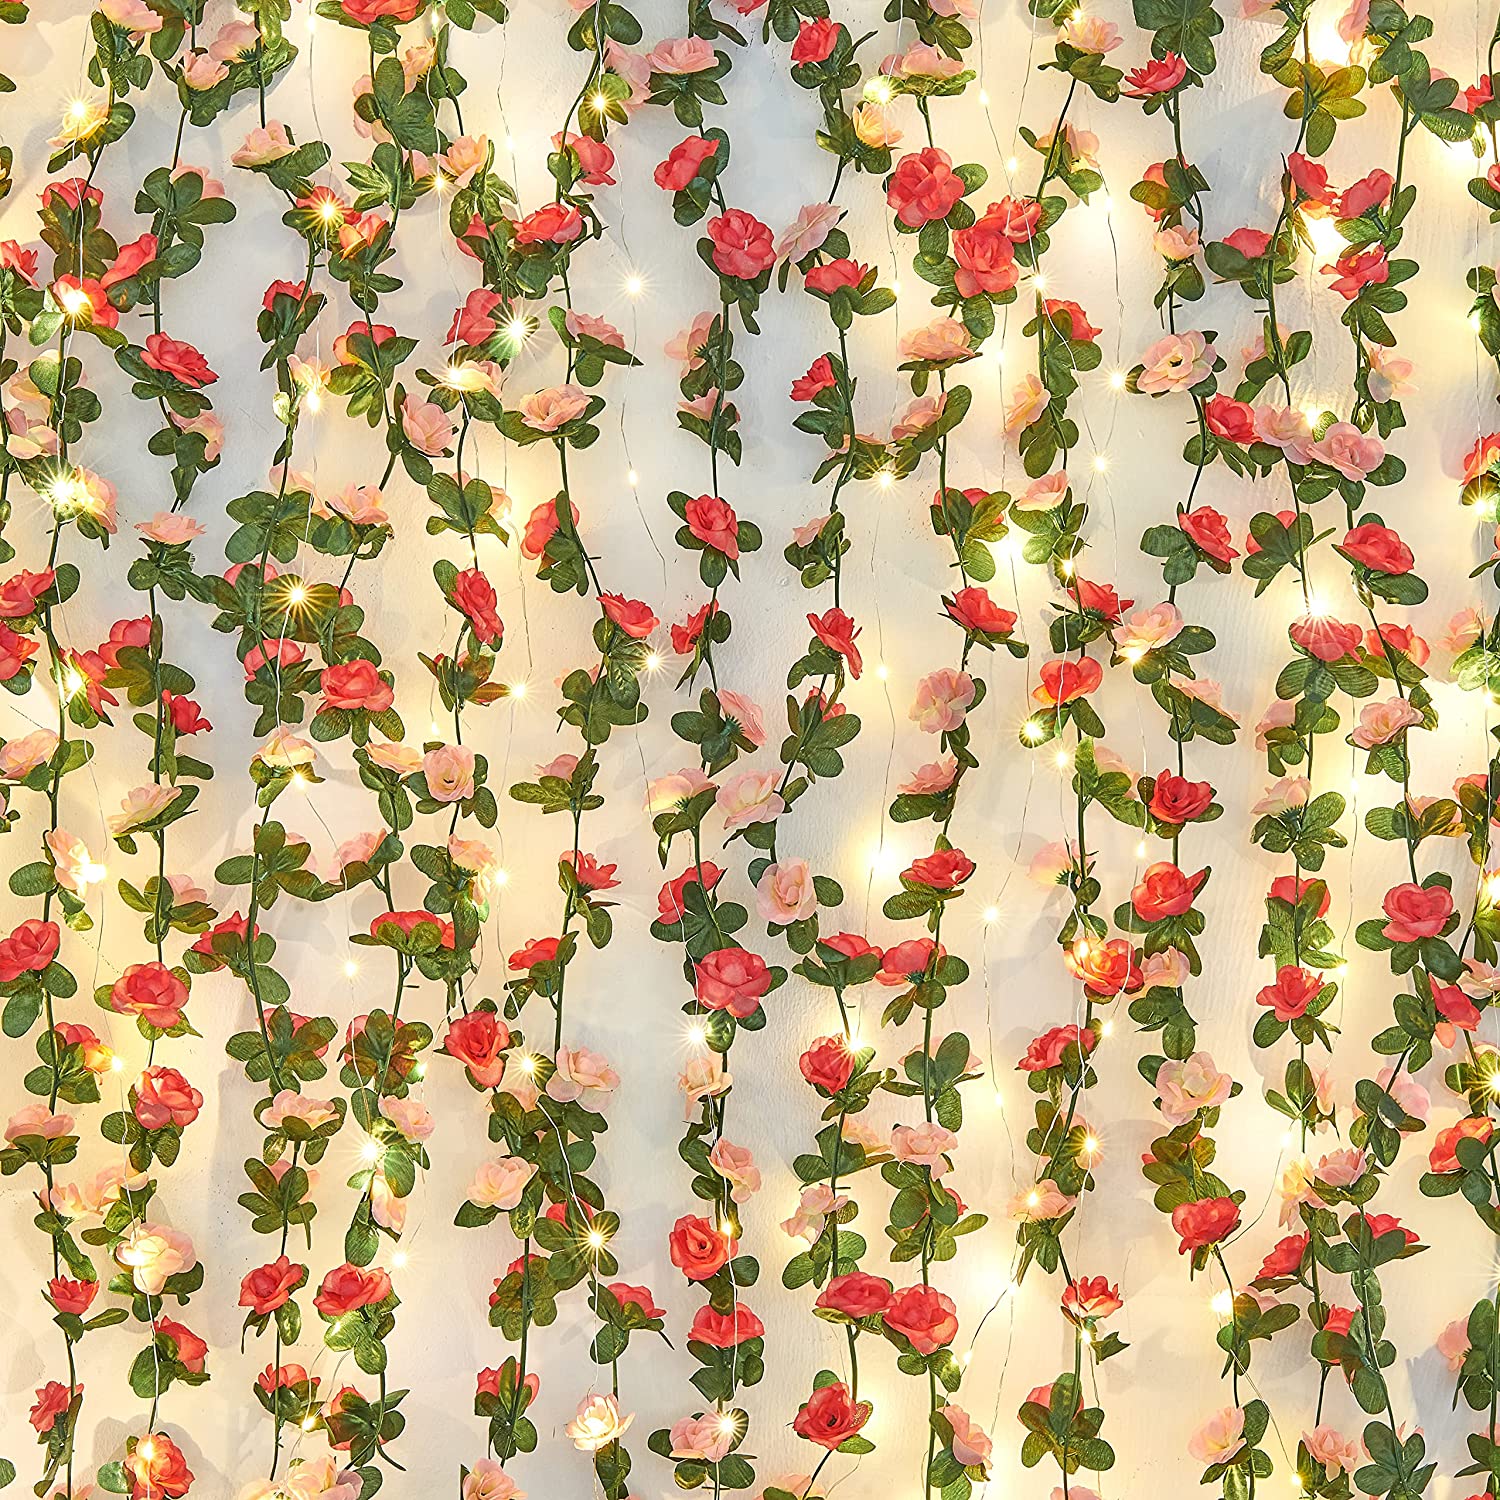 BLEUM CADE 2 Pcs 16.4Ft Flower Garland Artificial Rose Vines for Bedroom,  Hangin